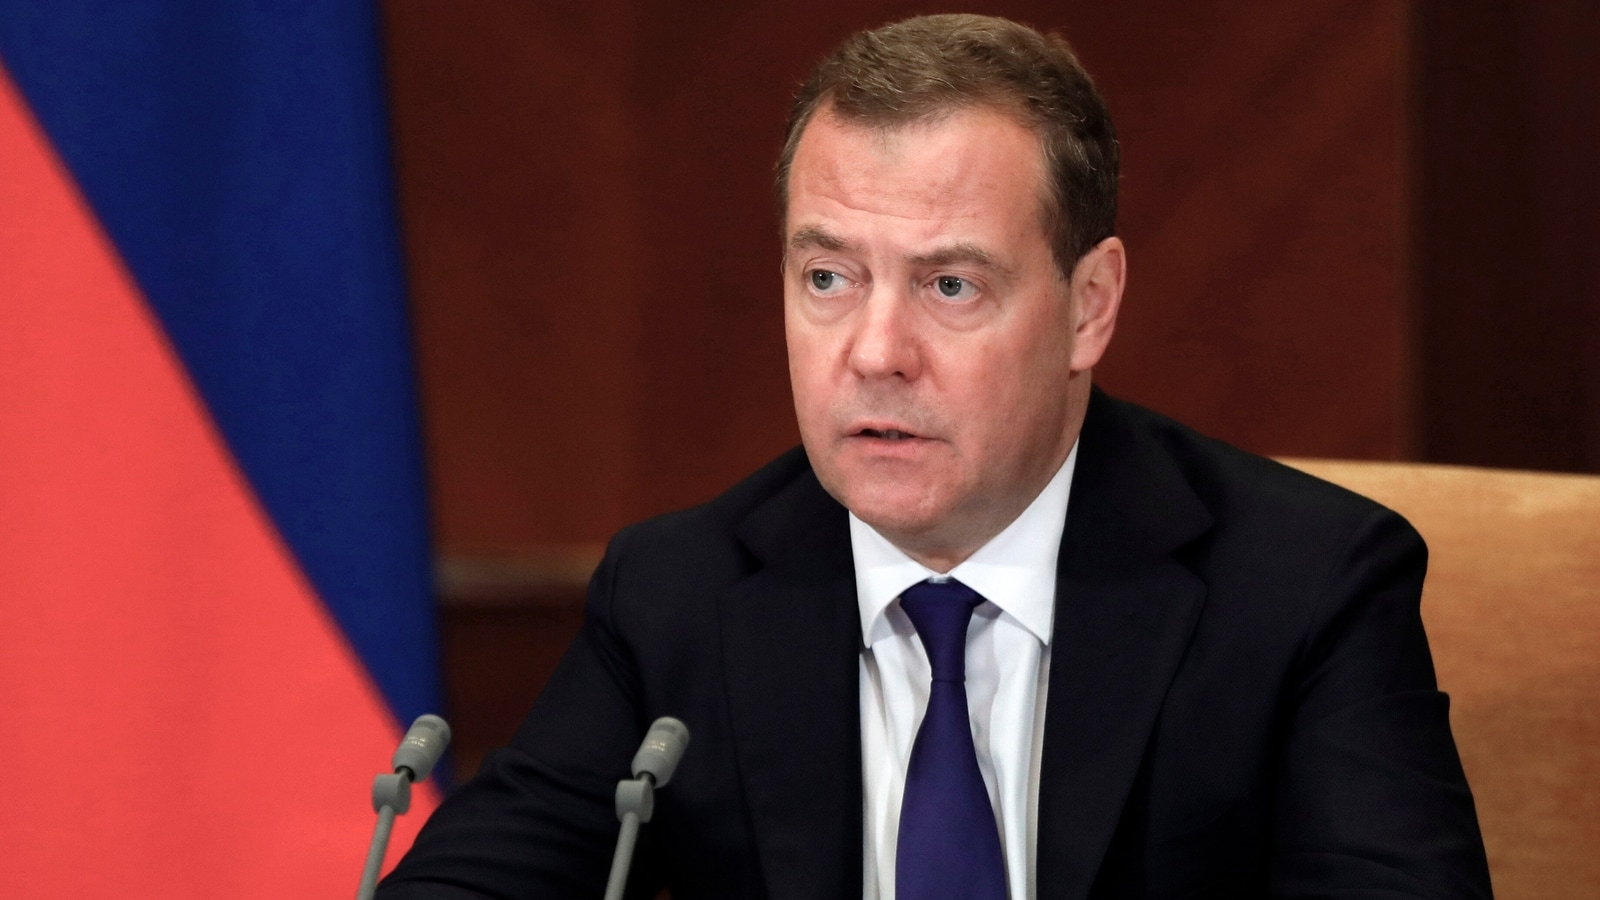 Medvedev: “Ağ Evdə hər şeyi dərin dövlət idarə edir”